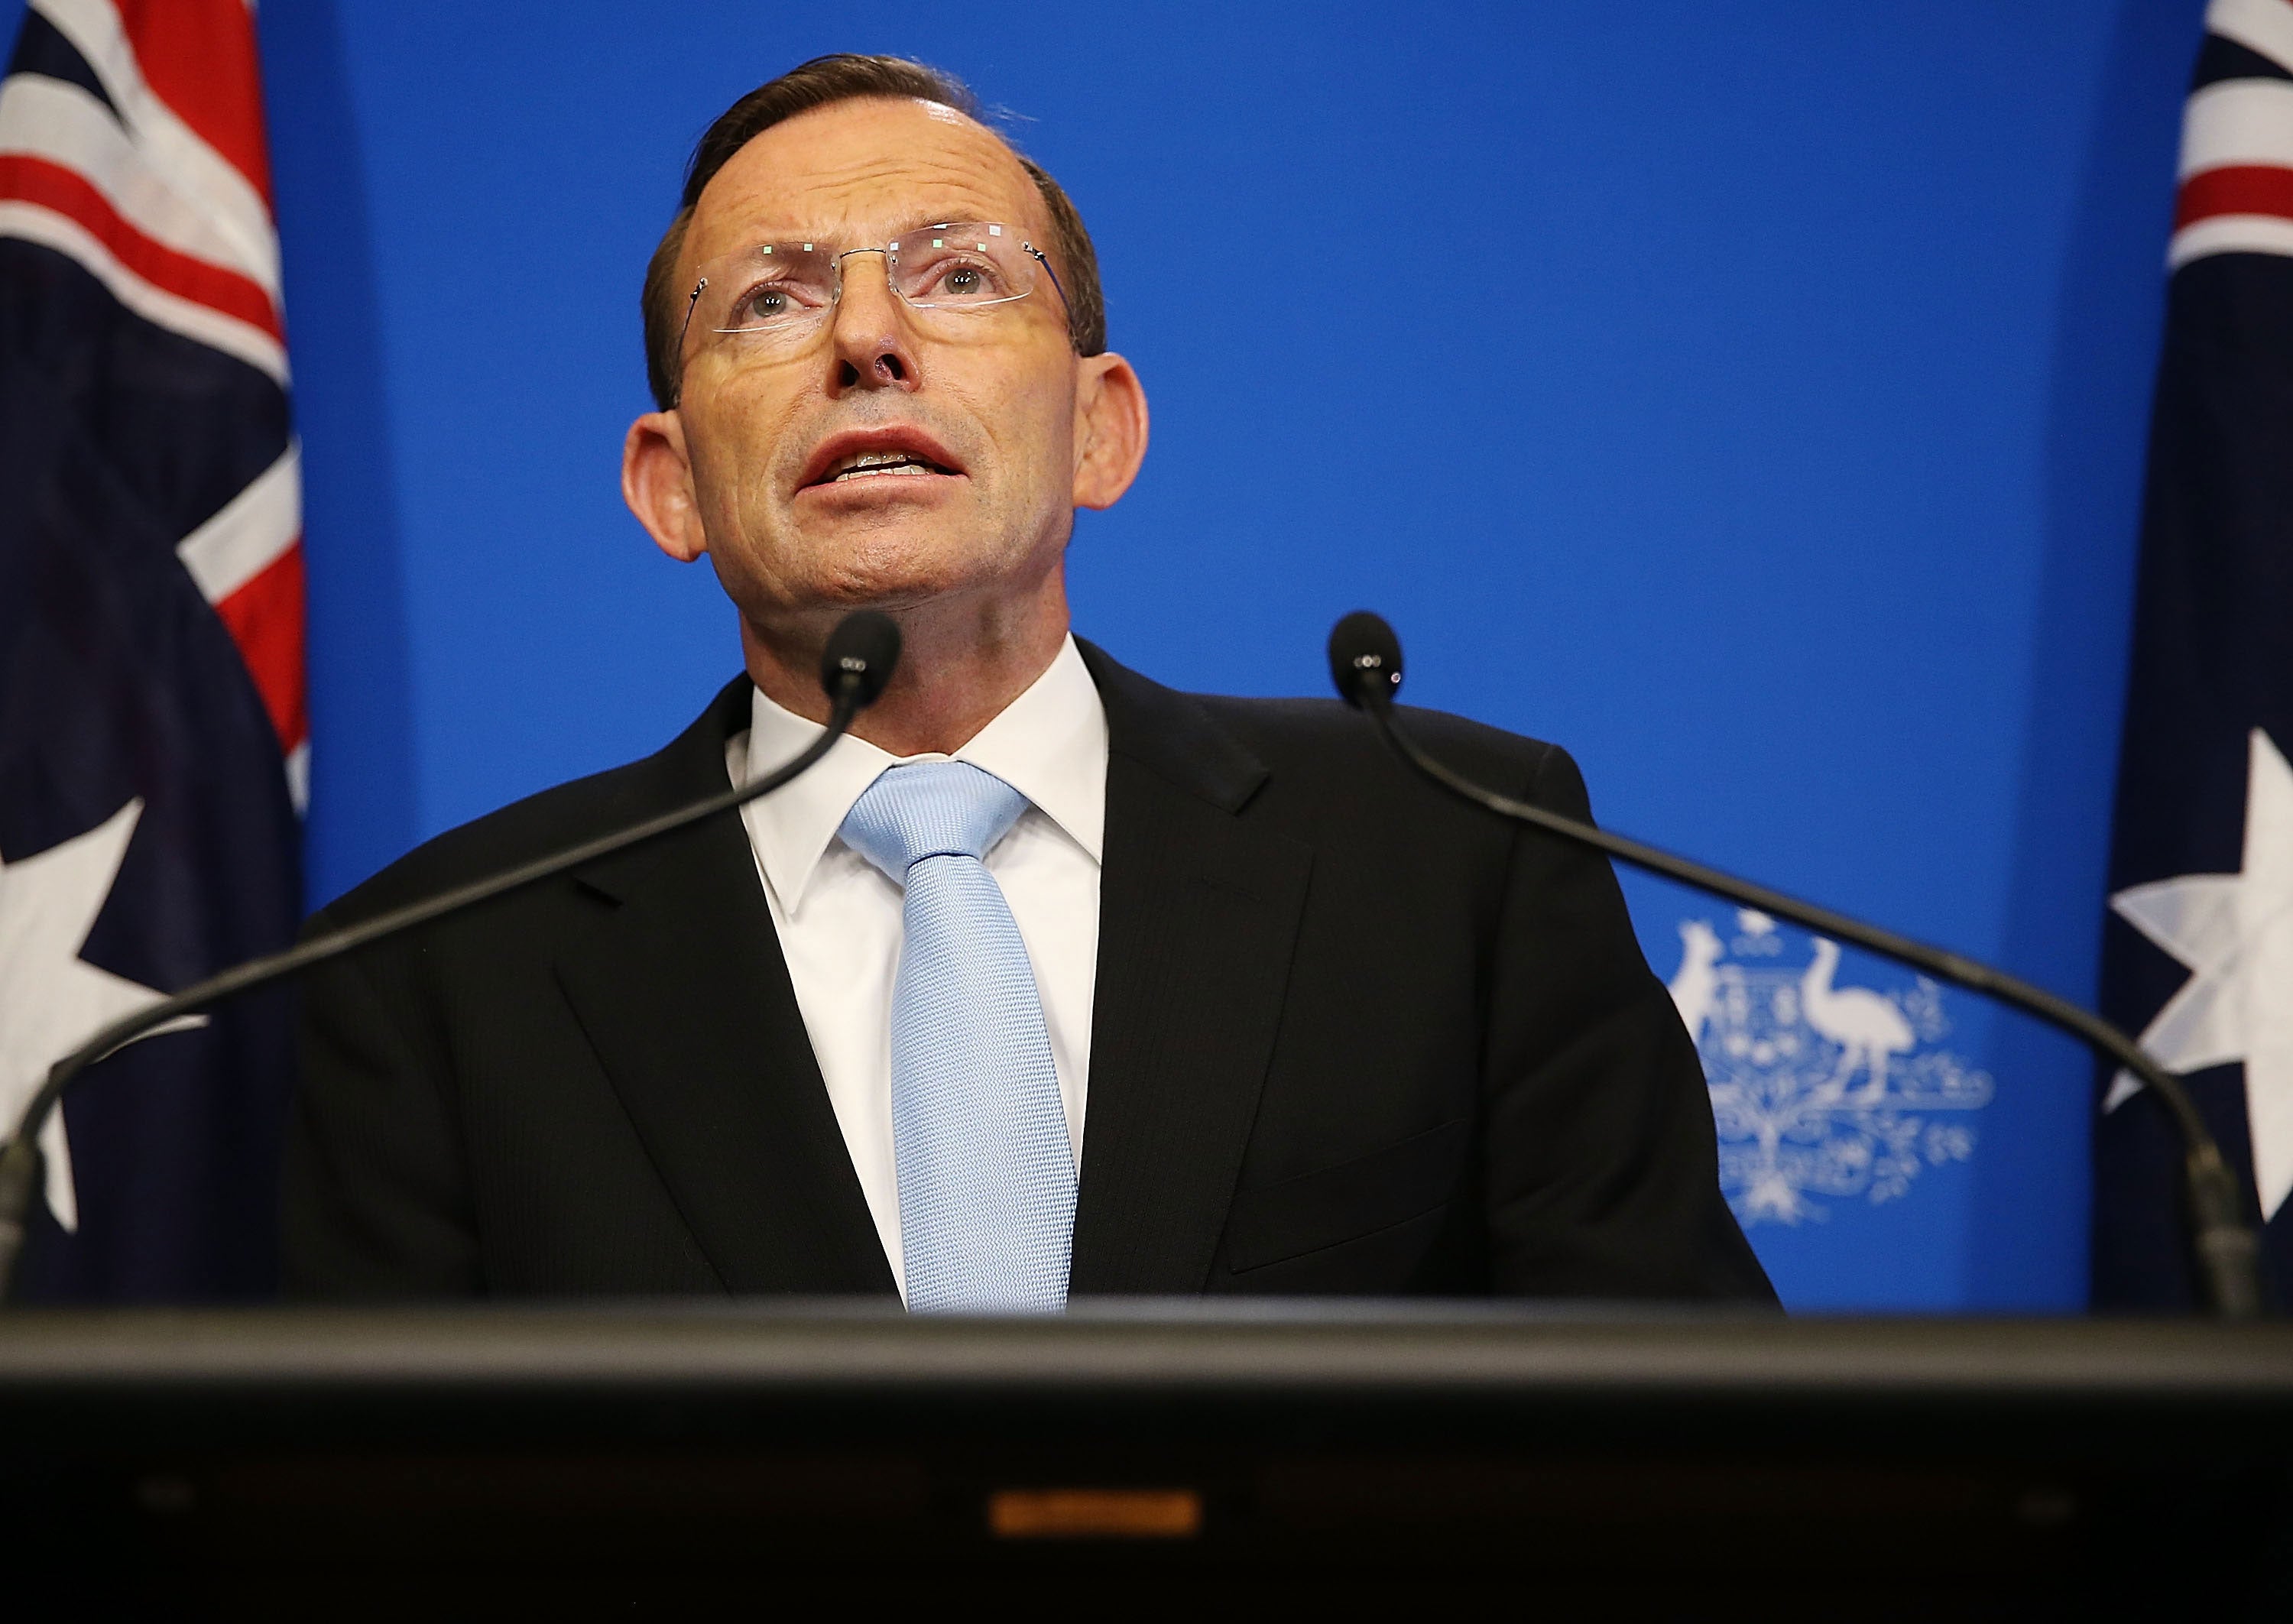 Australia's prime minister Tony Abbott